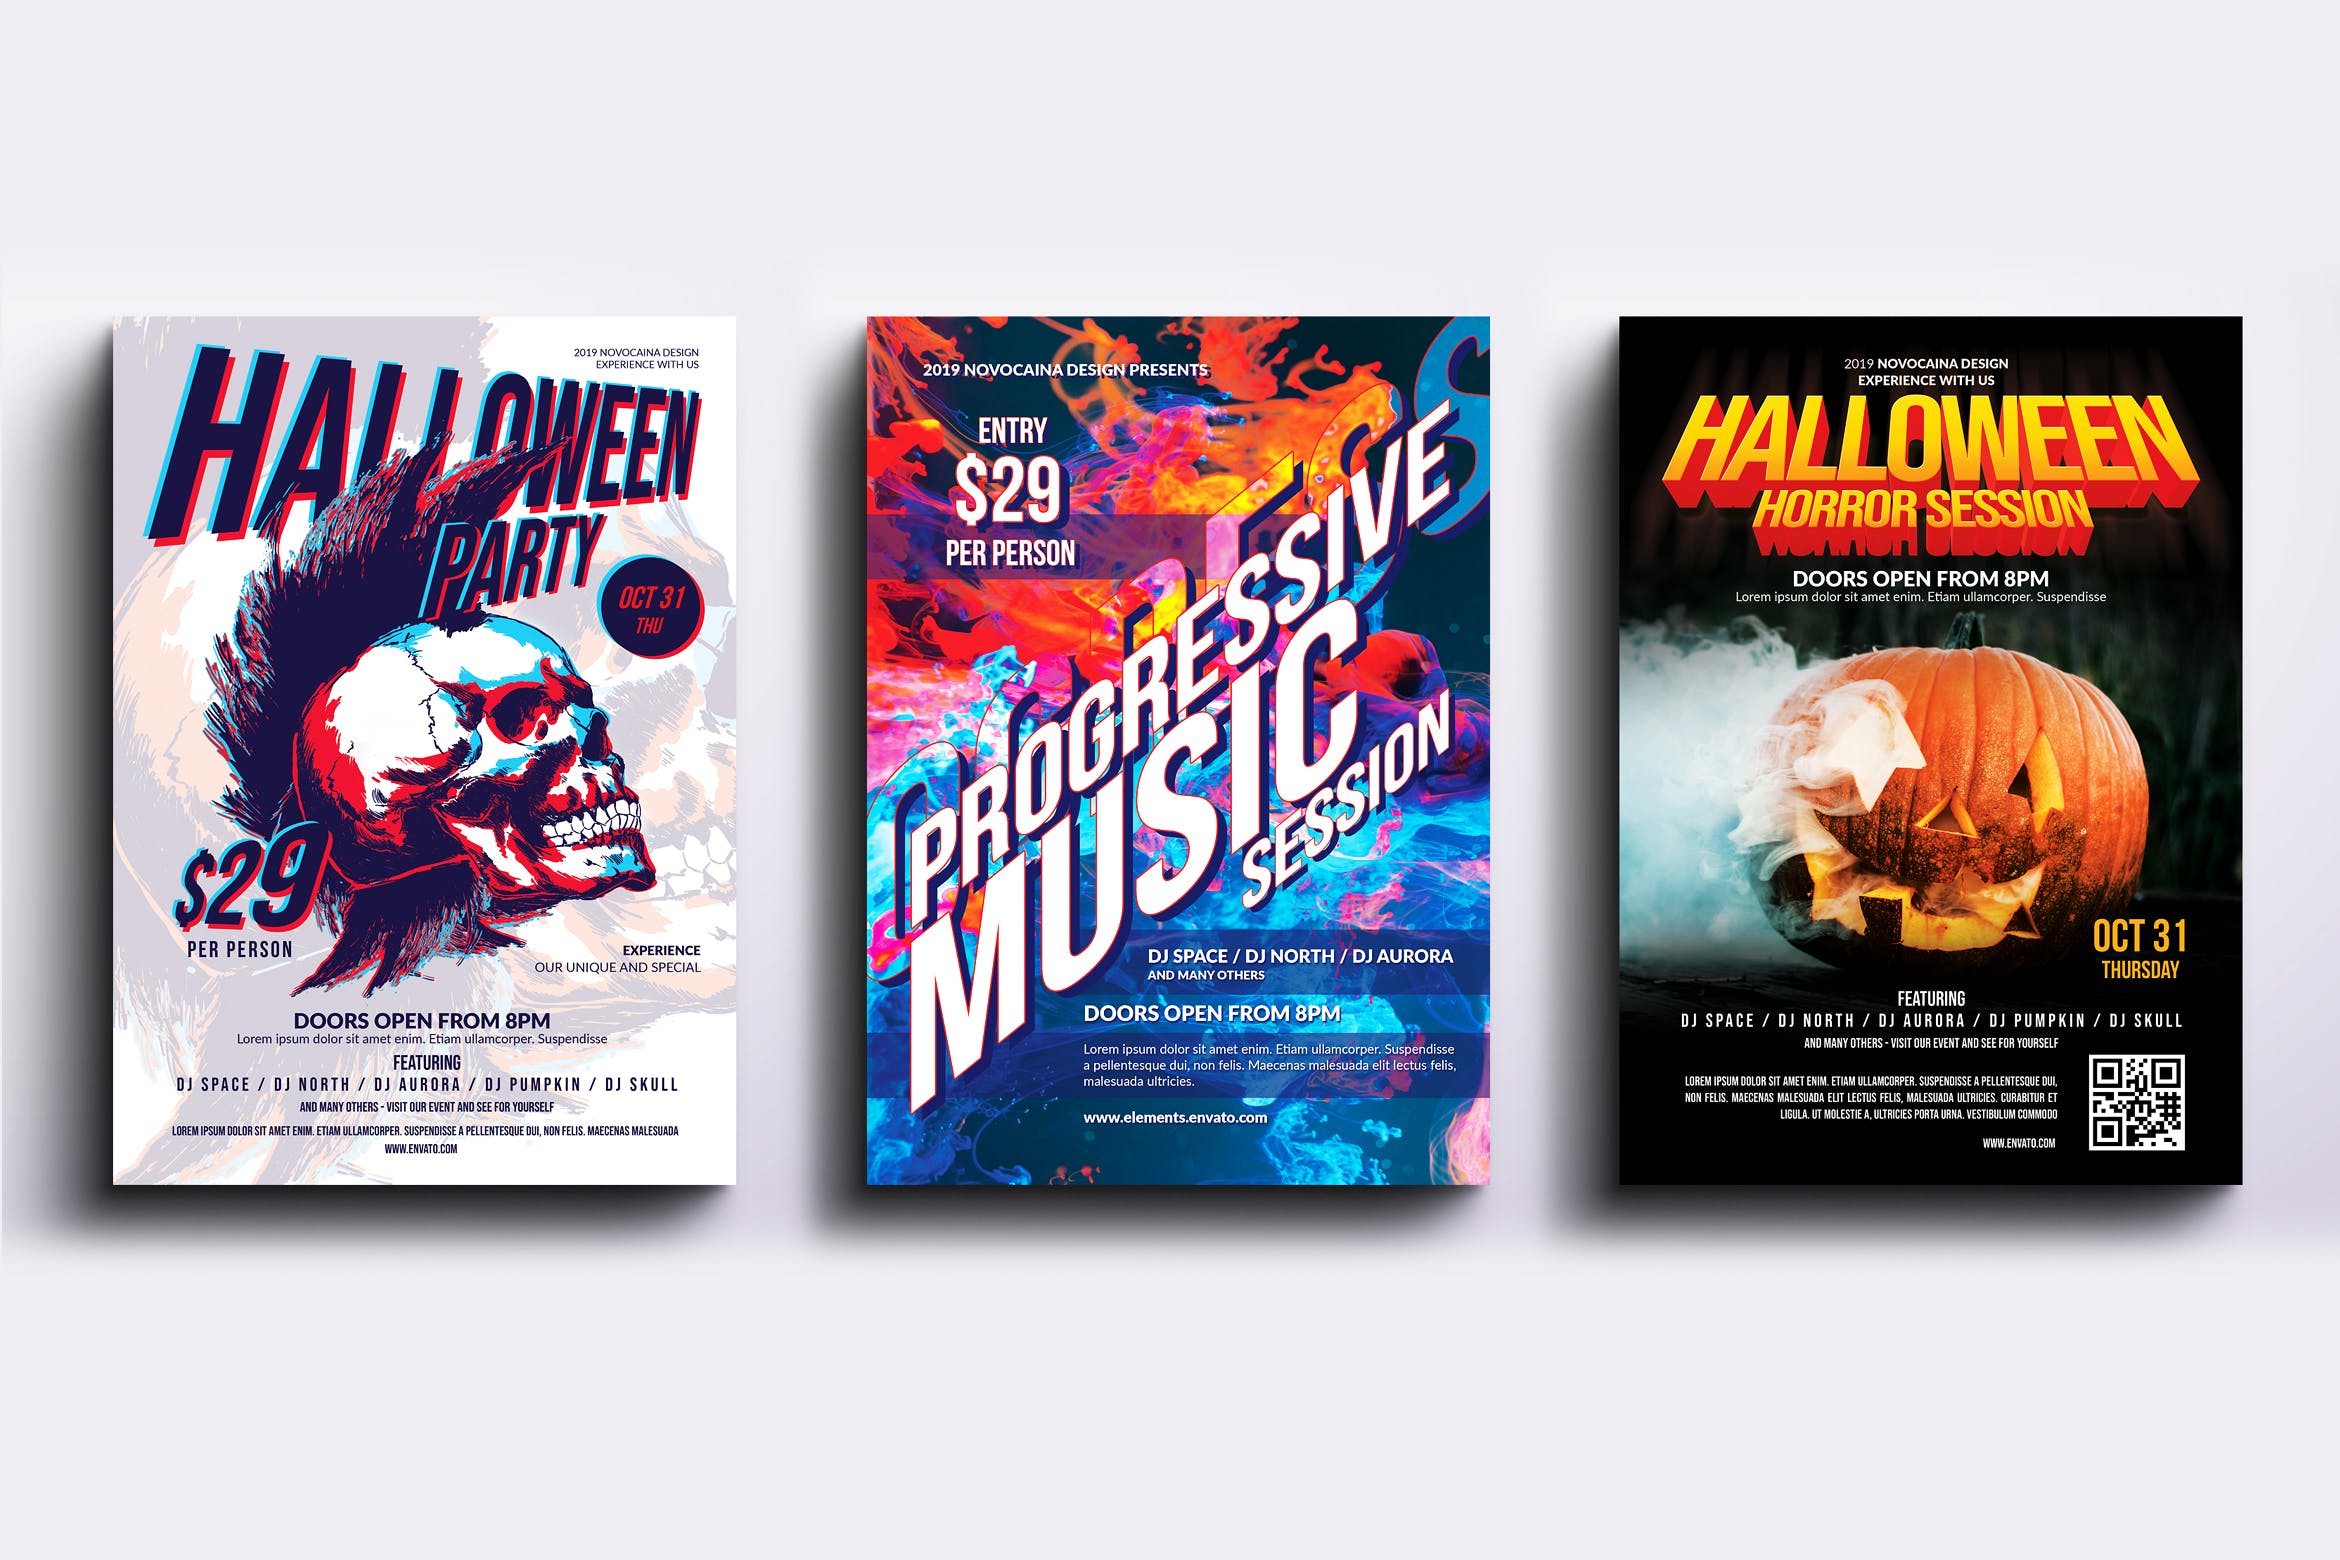 迪斯科音乐舞厅主题活动派对海报PSD素材素材中国精选模板合集v4 Event Party Posters & Flyers Bundle V4插图